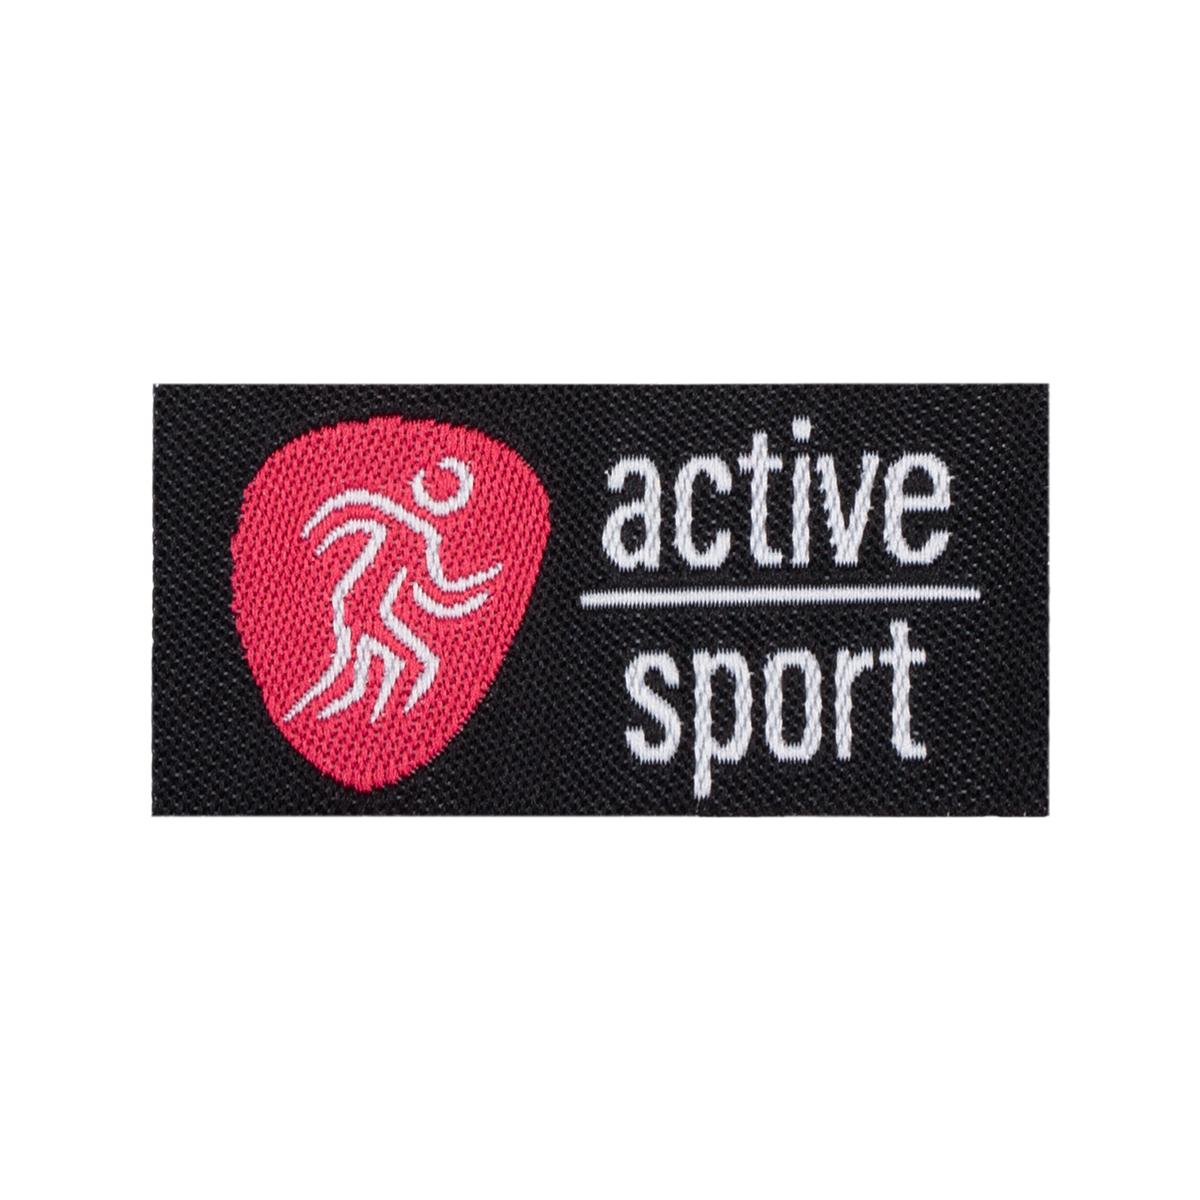 01-4 active sport 2.2х4.4 см